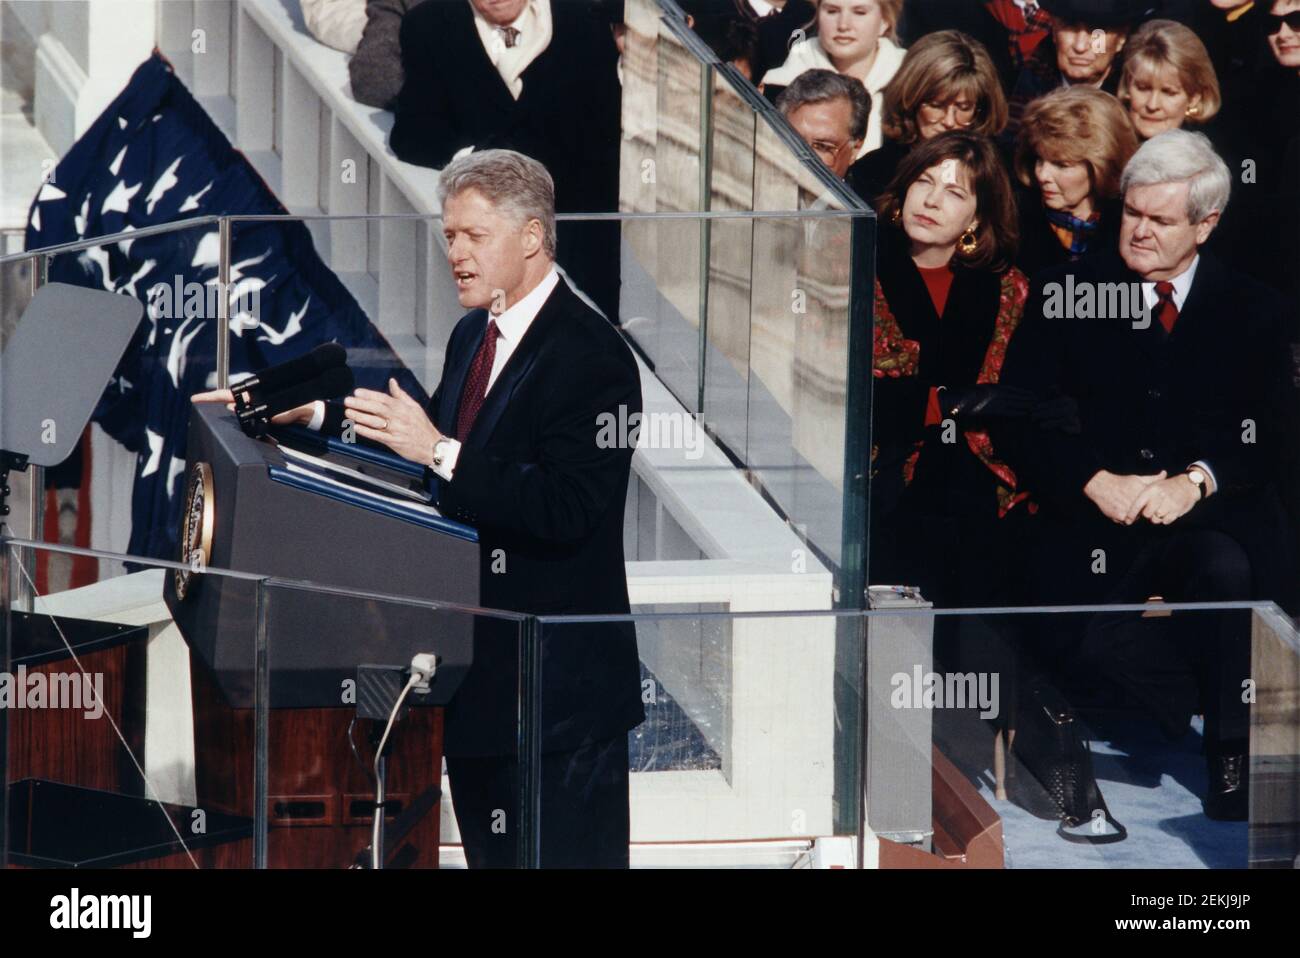 Le président américain Bill Clinton a prononcé son discours inaugural sur le front ouest du Capitole des États-Unis, Washington, D.C., États-Unis, Architect of the Capitol Collection, le 20 janvier 1997 Banque D'Images